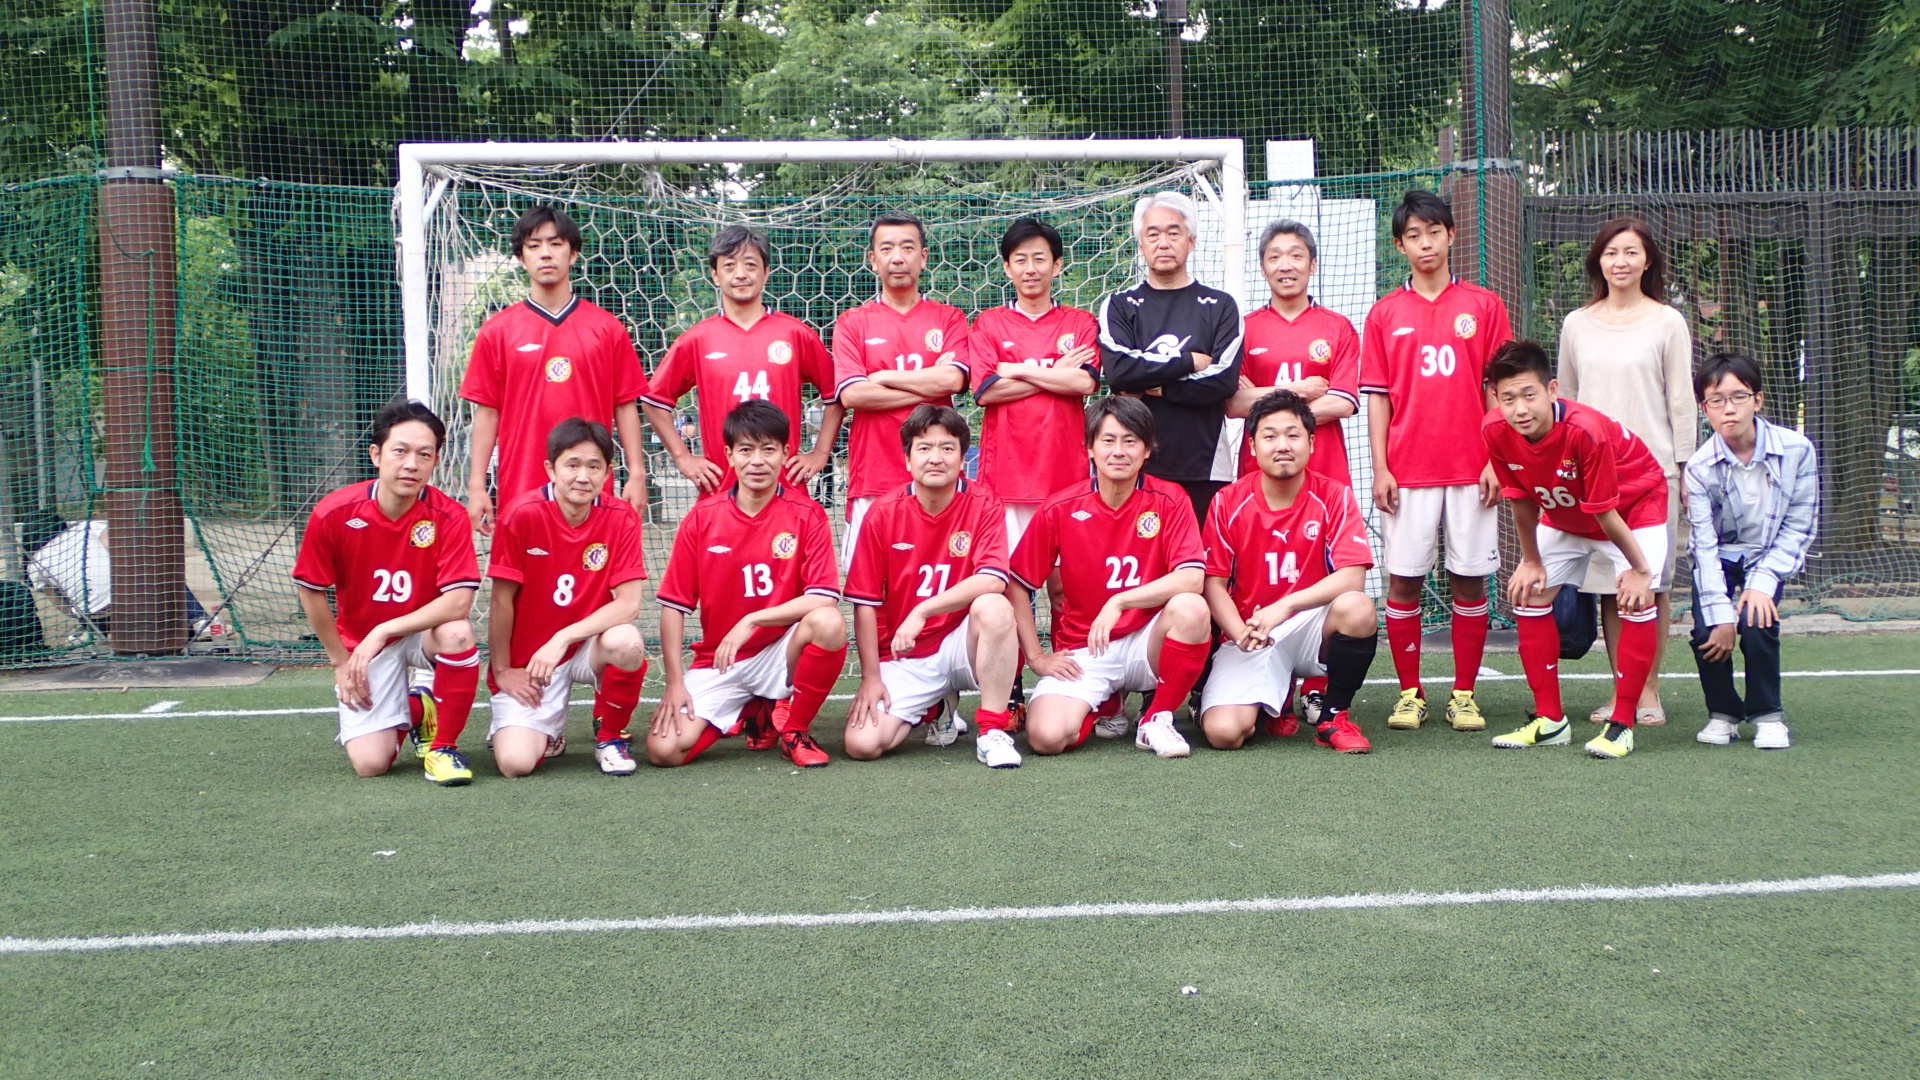 春季フットサル大会が終了しました 渋谷区サッカー協会